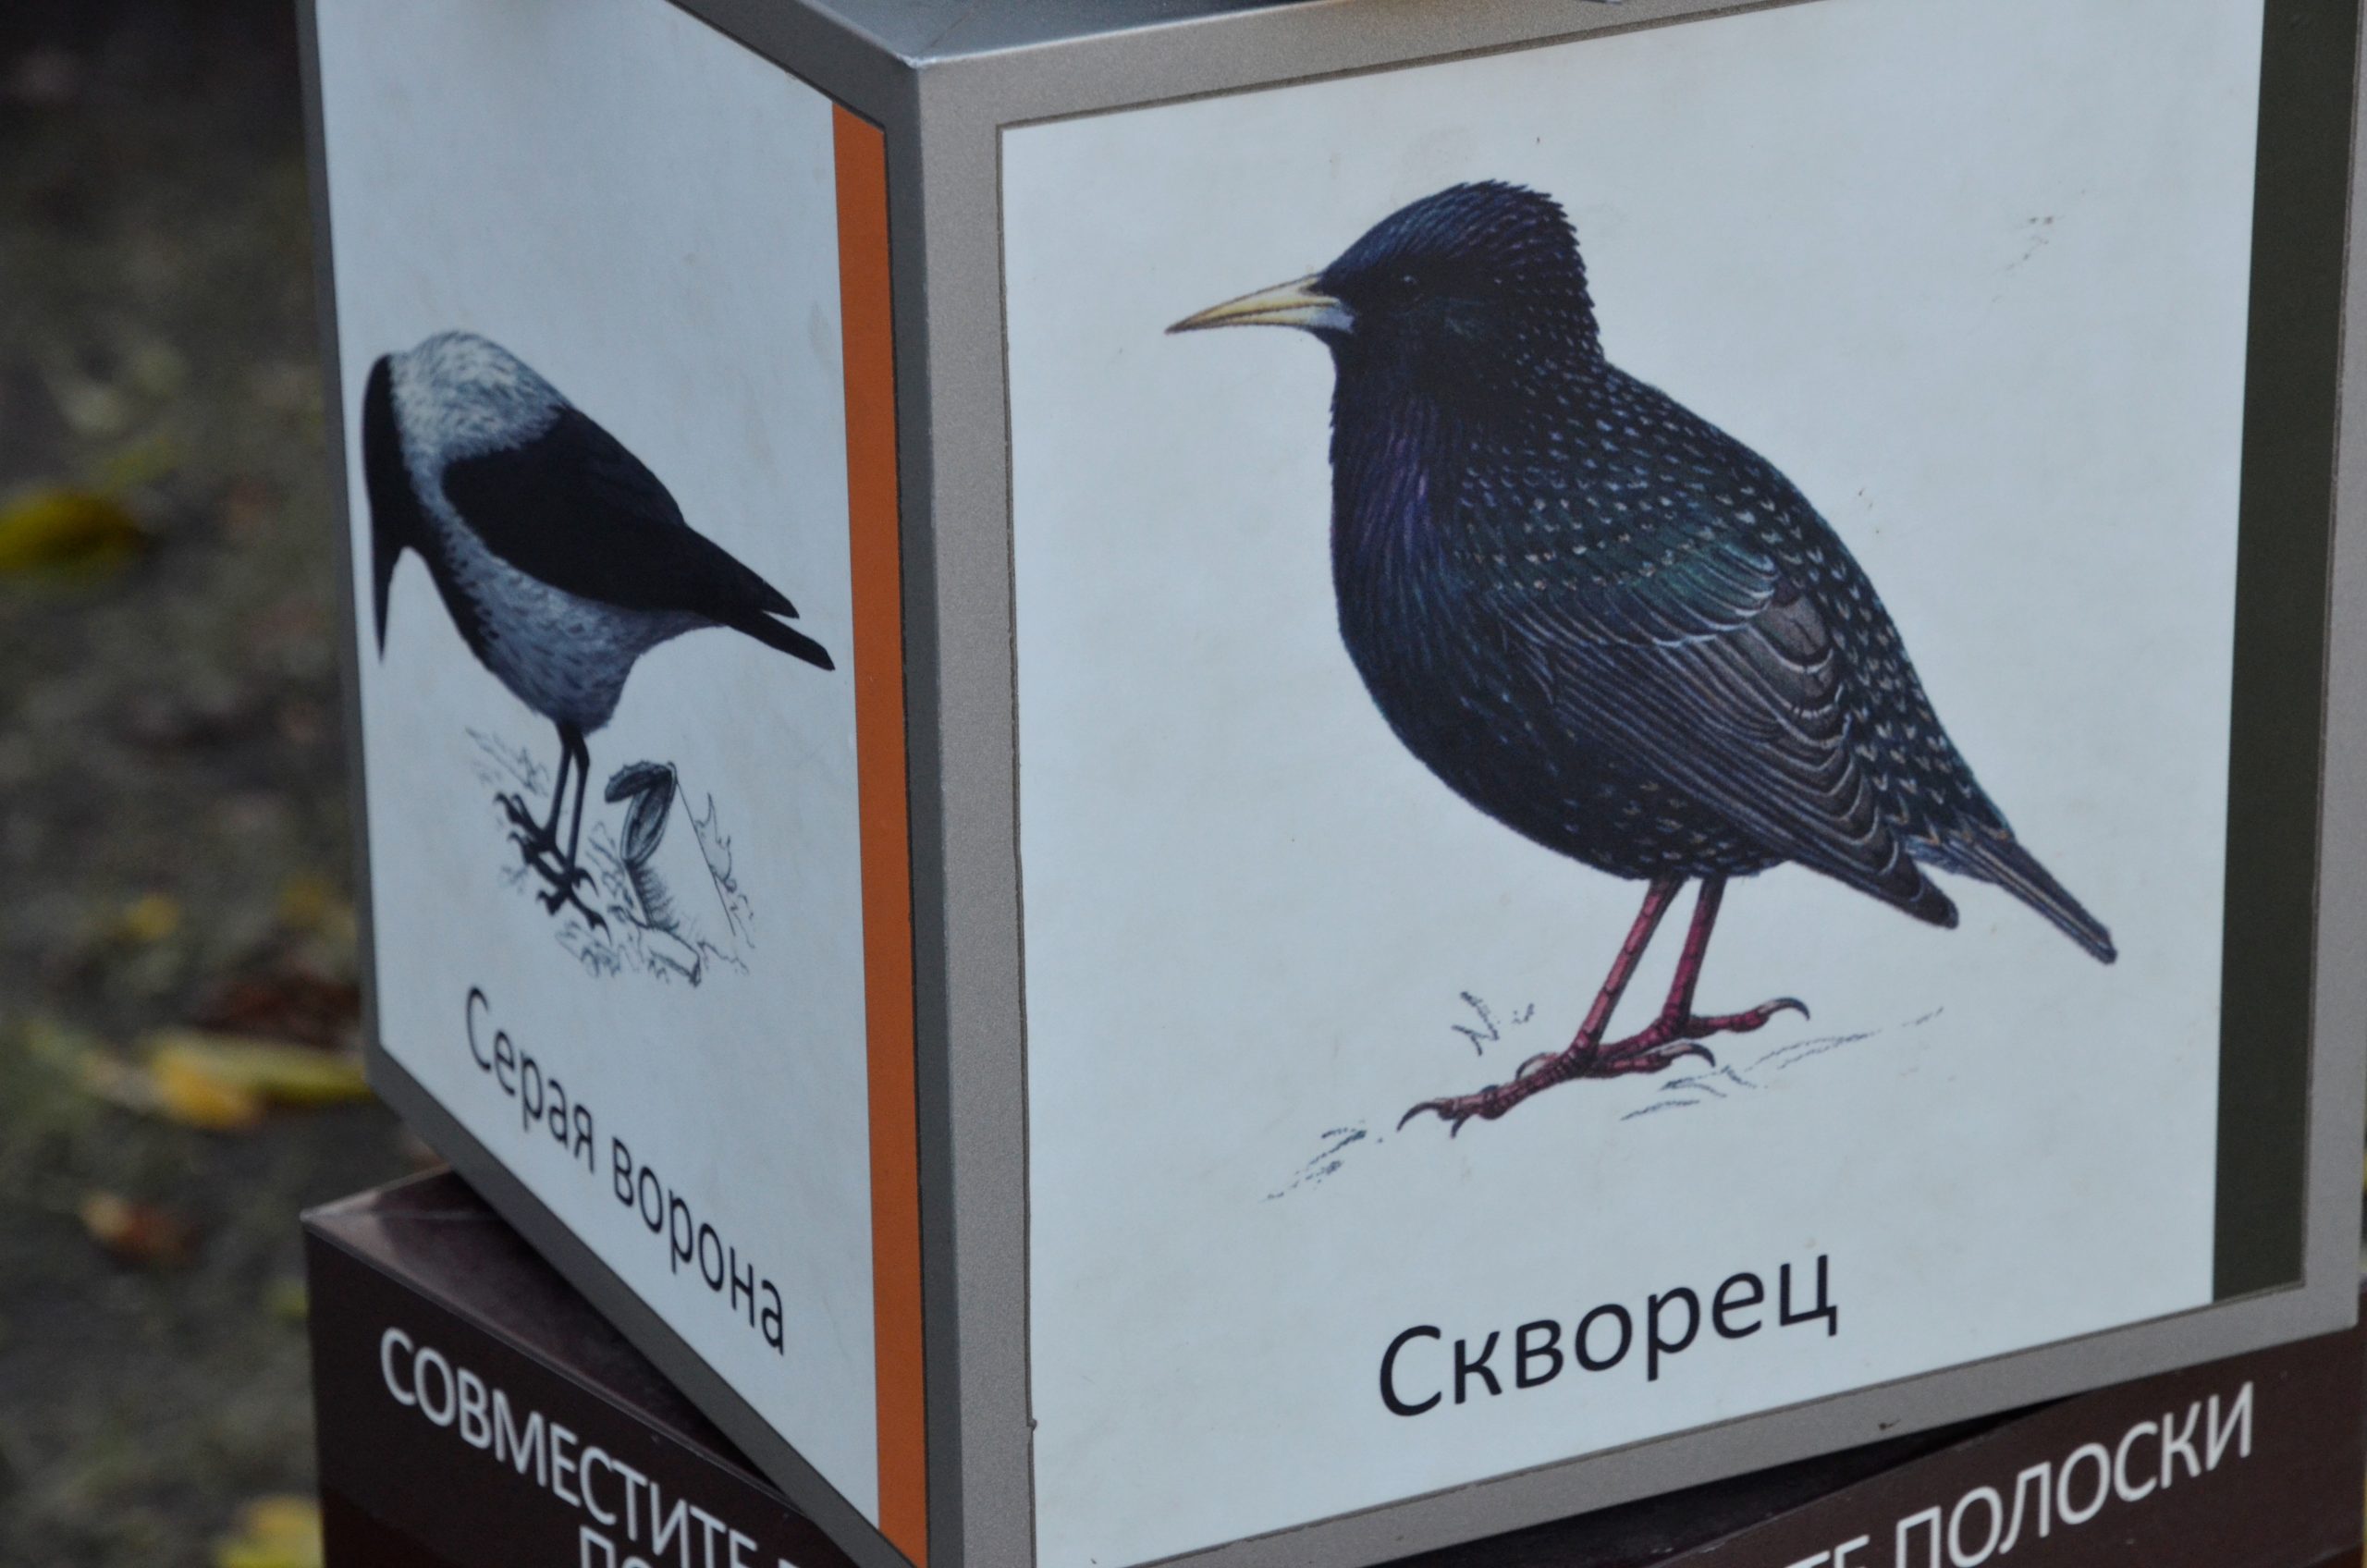 Зима не за горами: столичным жителям рассказали, какие виды птиц останутся в холодное время года в Москве